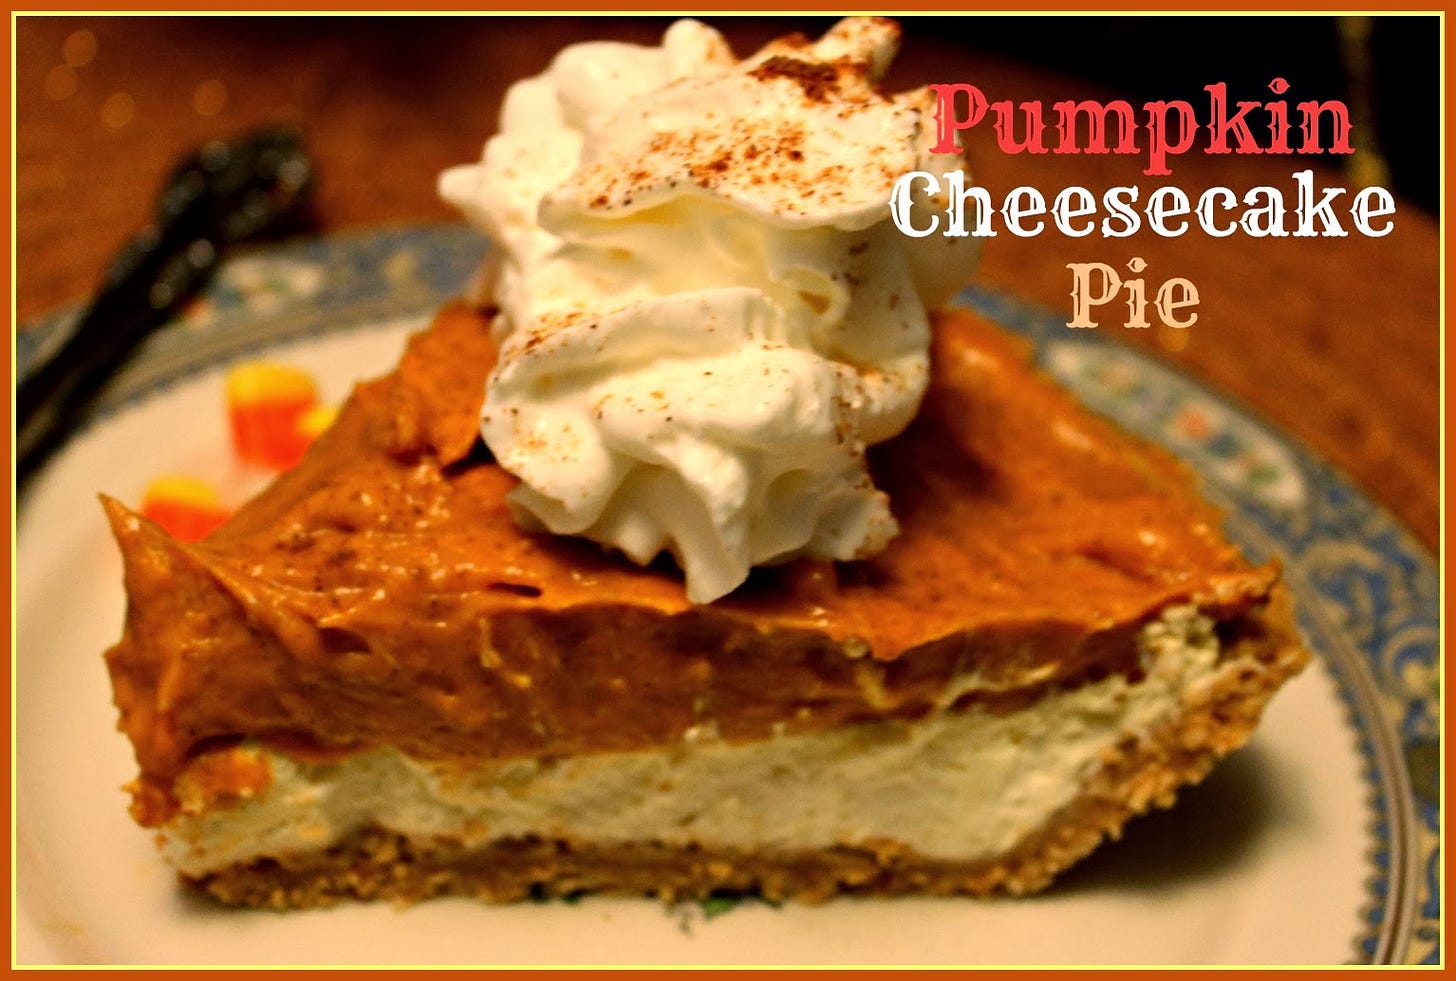 http://4.bp.blogspot.com/-HrYD5dPDXcU/UmXB_JD728I/AAAAAAAANNw/GqyE4gJv8zk/s1600/Pumpkin+Cheesecake+Pie.jpg